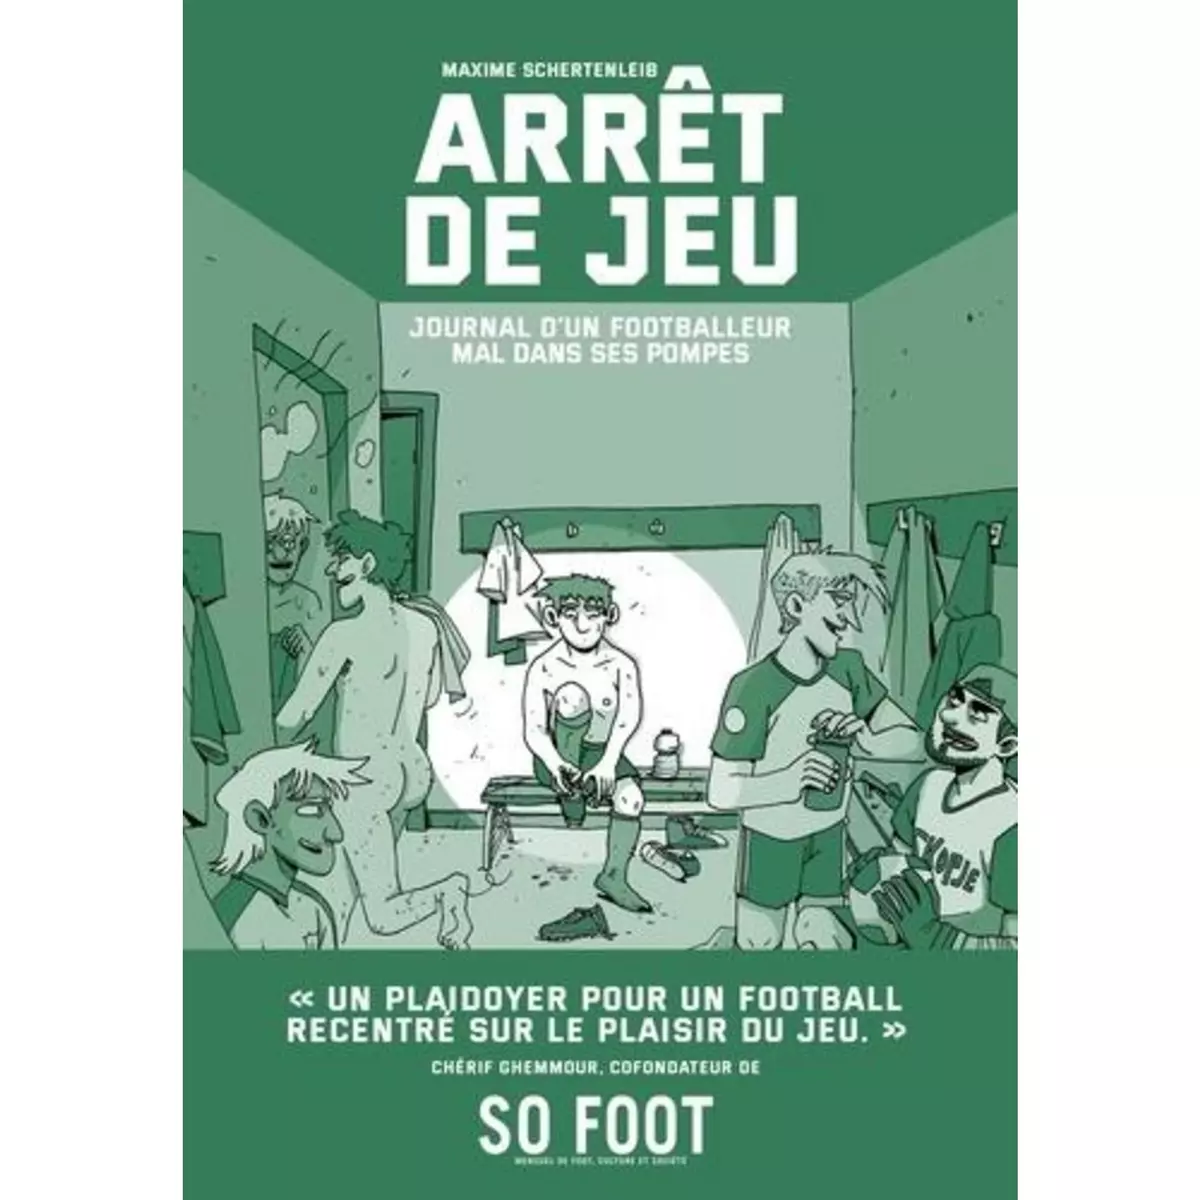  ARRET DE JEU. JOURNAL D'UN FOOTBALLEUR MAL DANS SES POMPES, Schertenleib Maxime